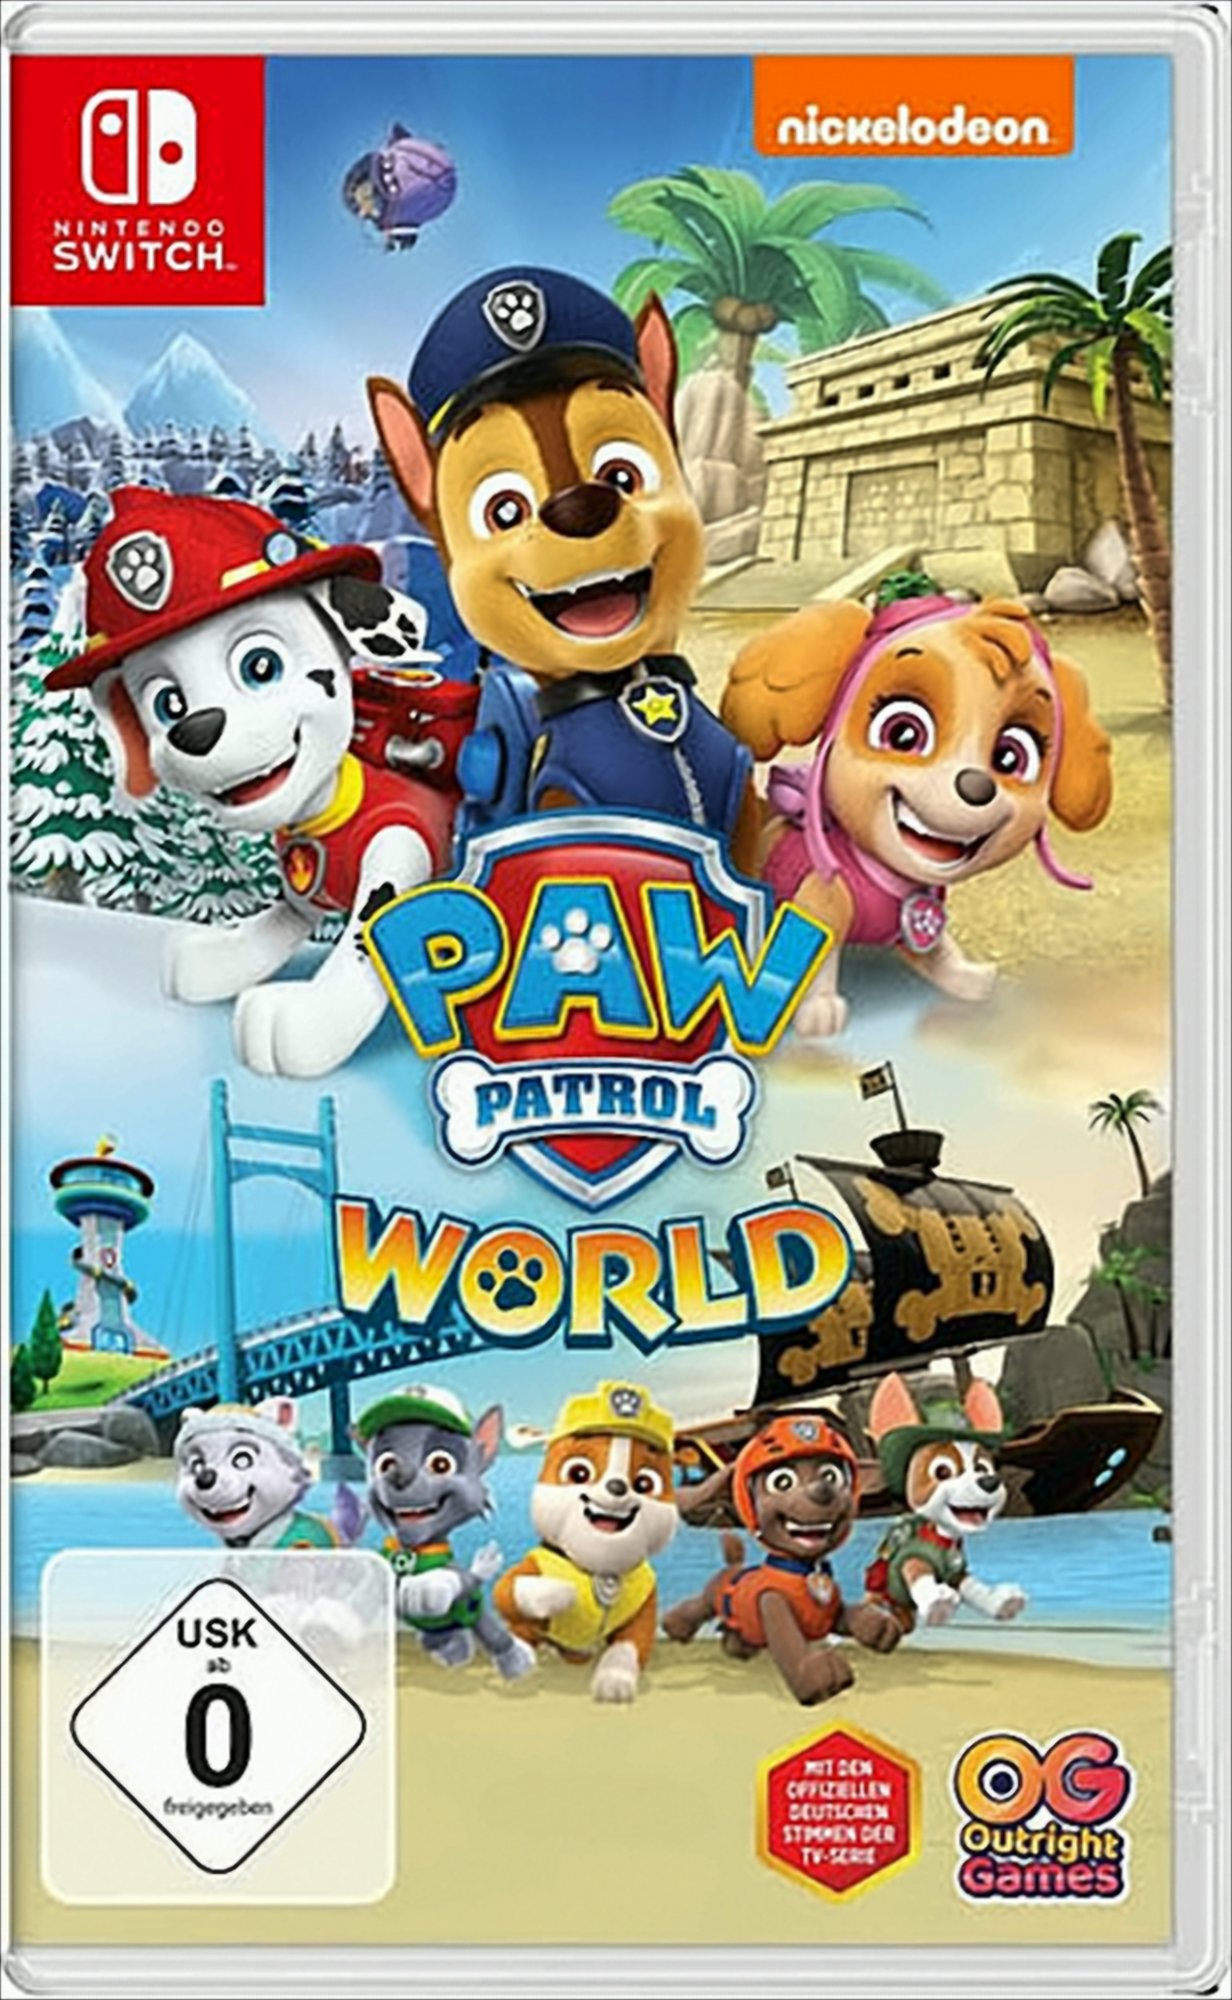 Paw Switch-Spiel Patrol Nintendo World Spiel